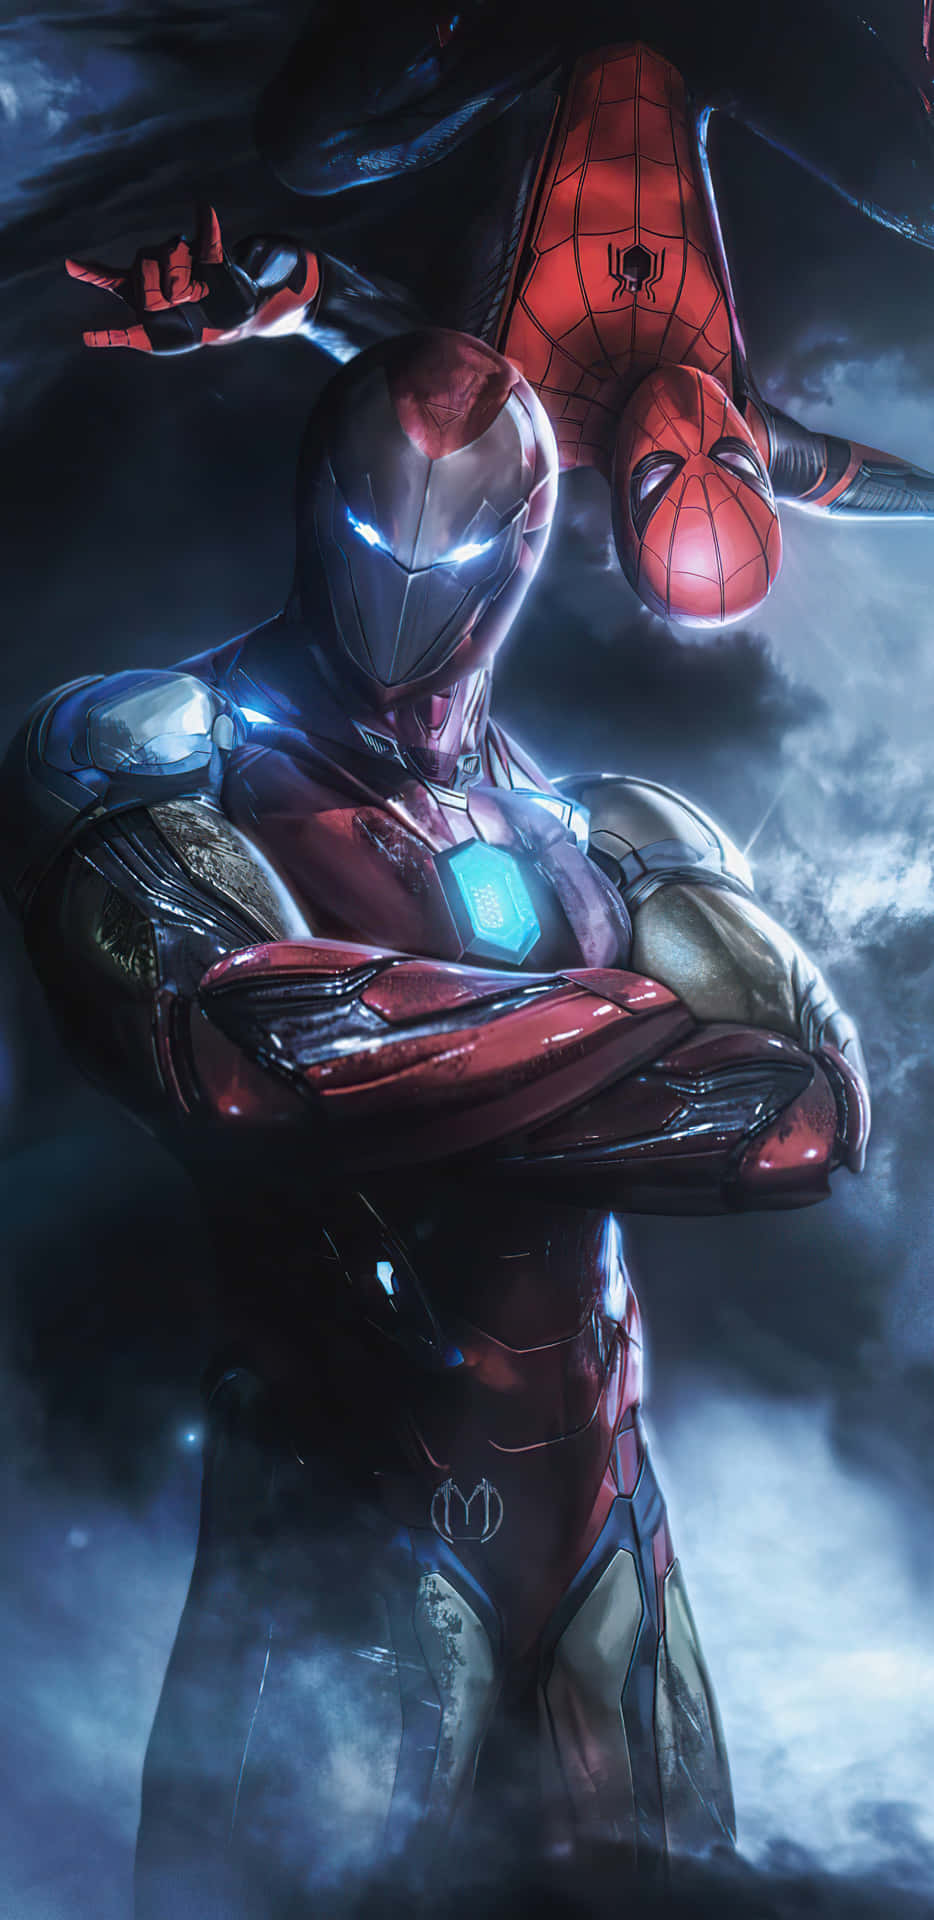 Marvelhjältarna Spider-man Och Iron Man Sluter Sig Samman. Wallpaper